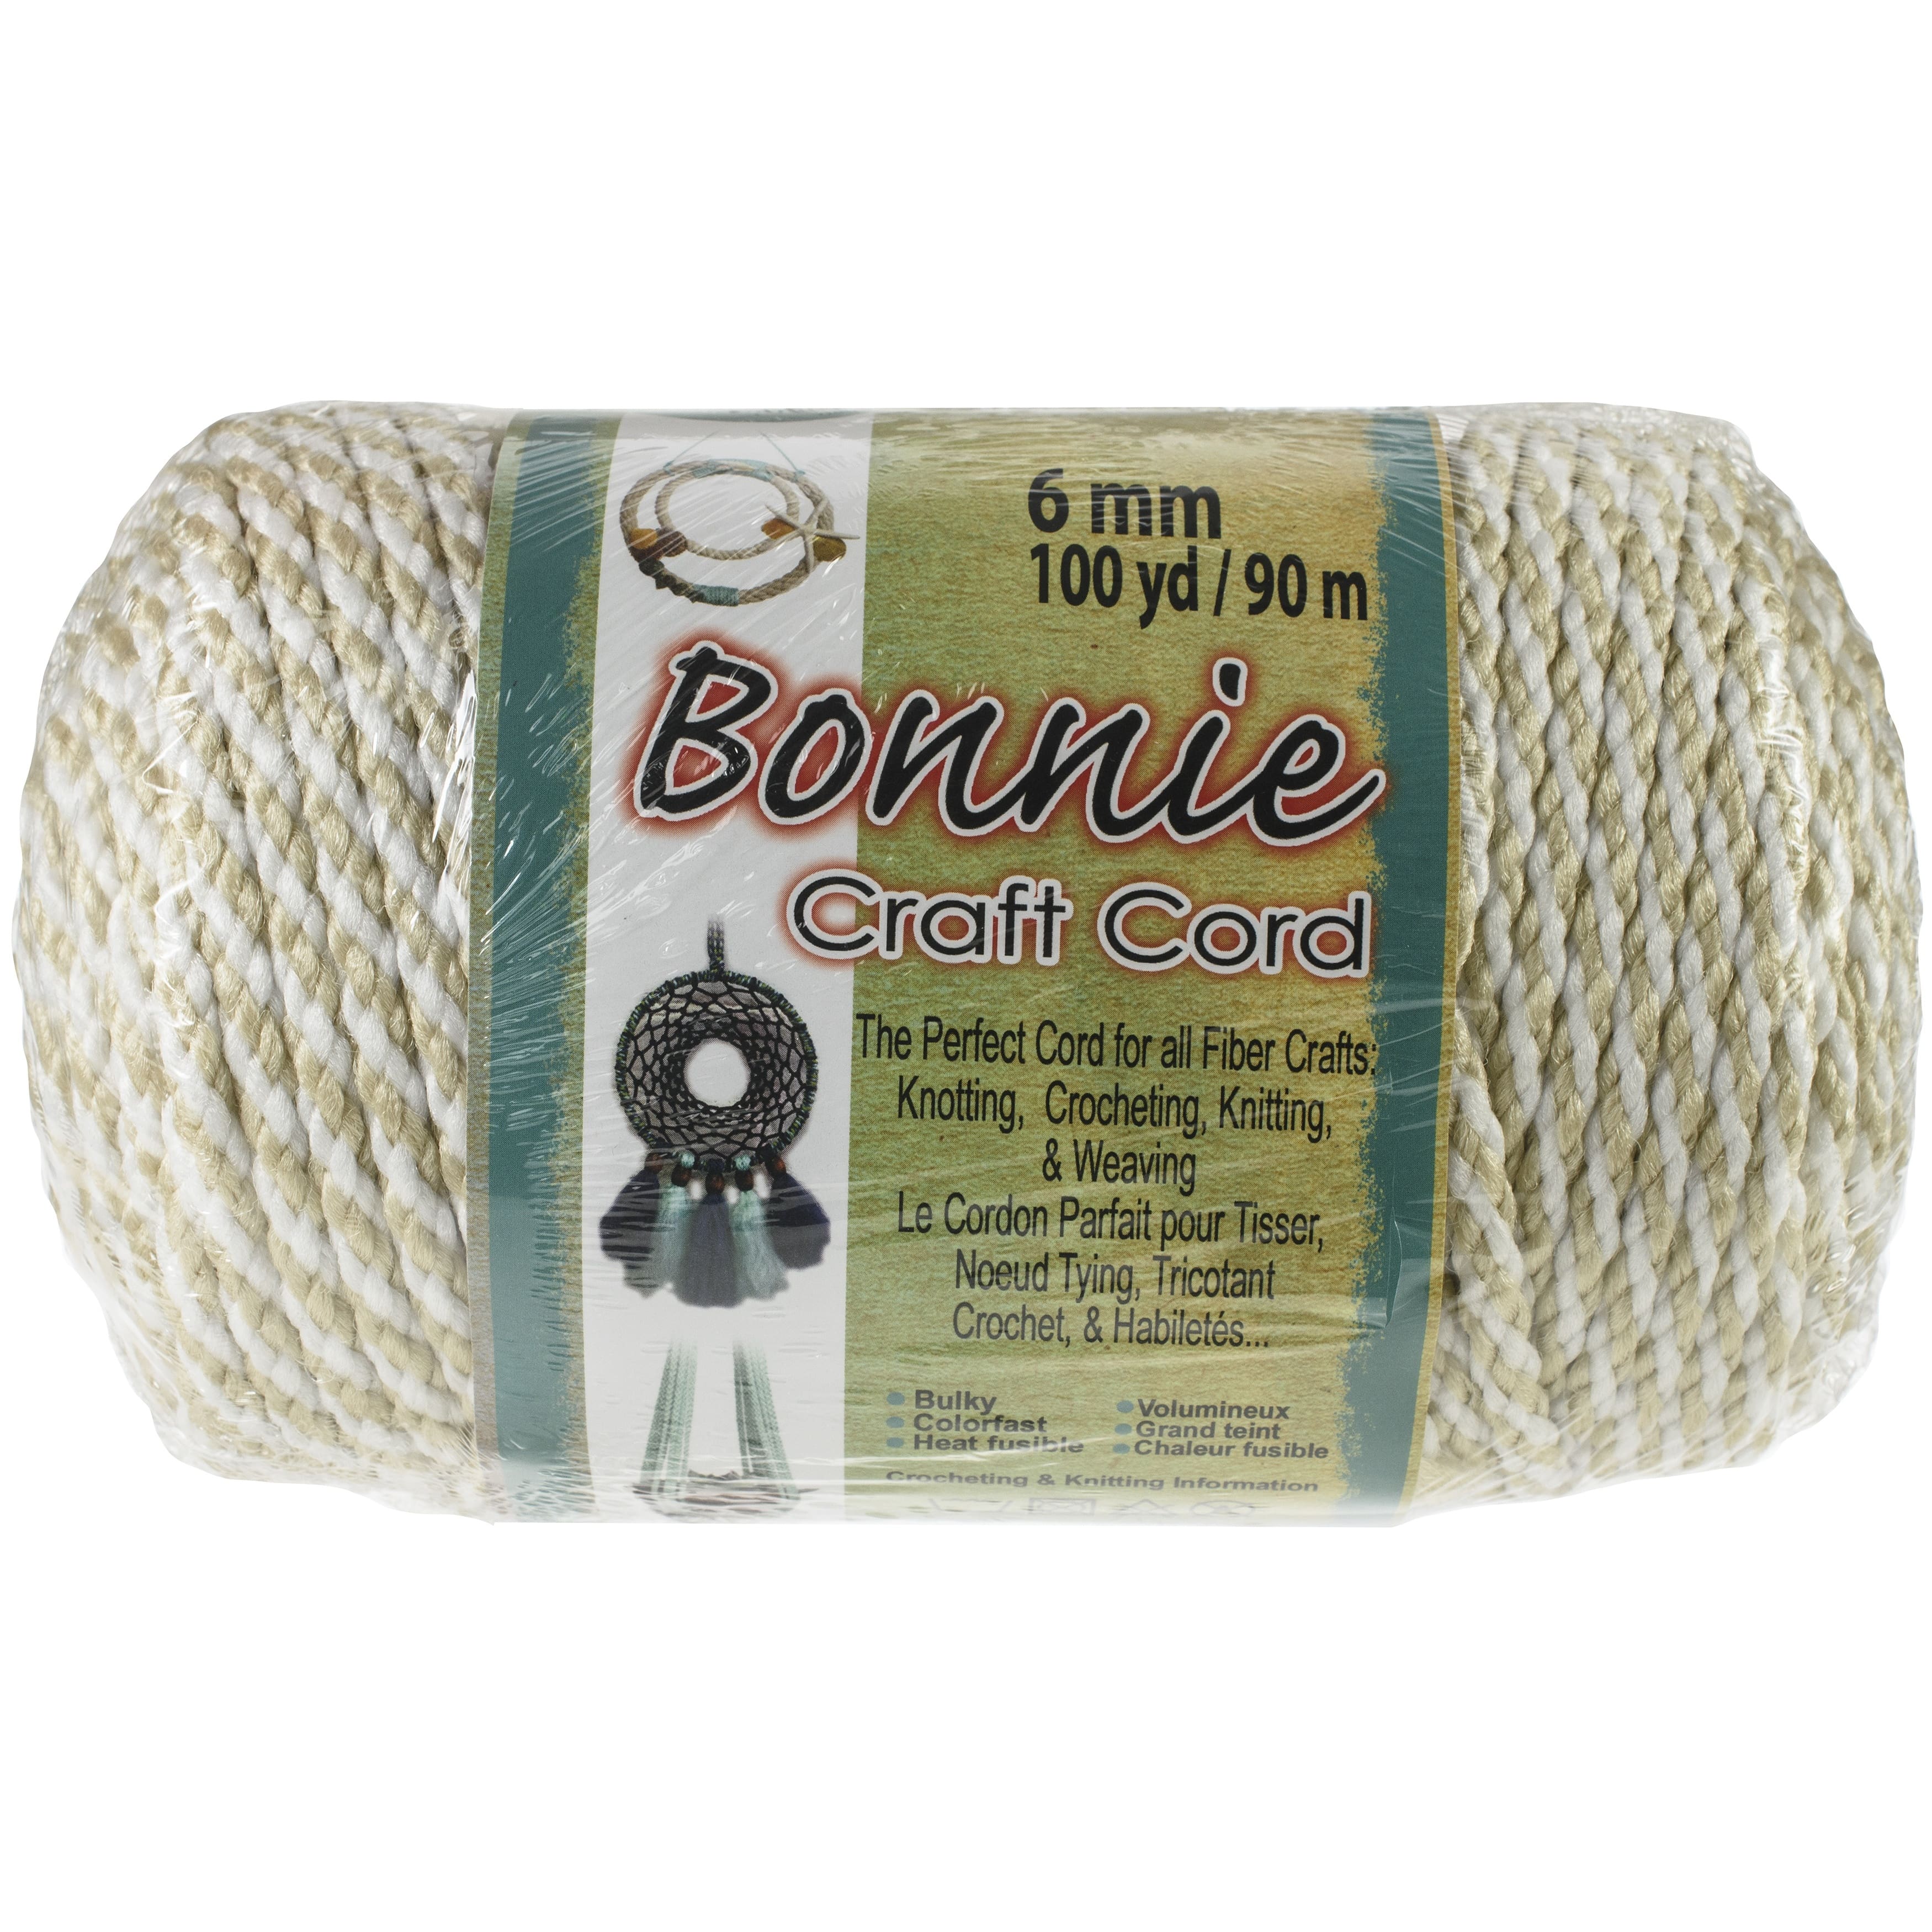 Bonnie Craft Cord, 6mm